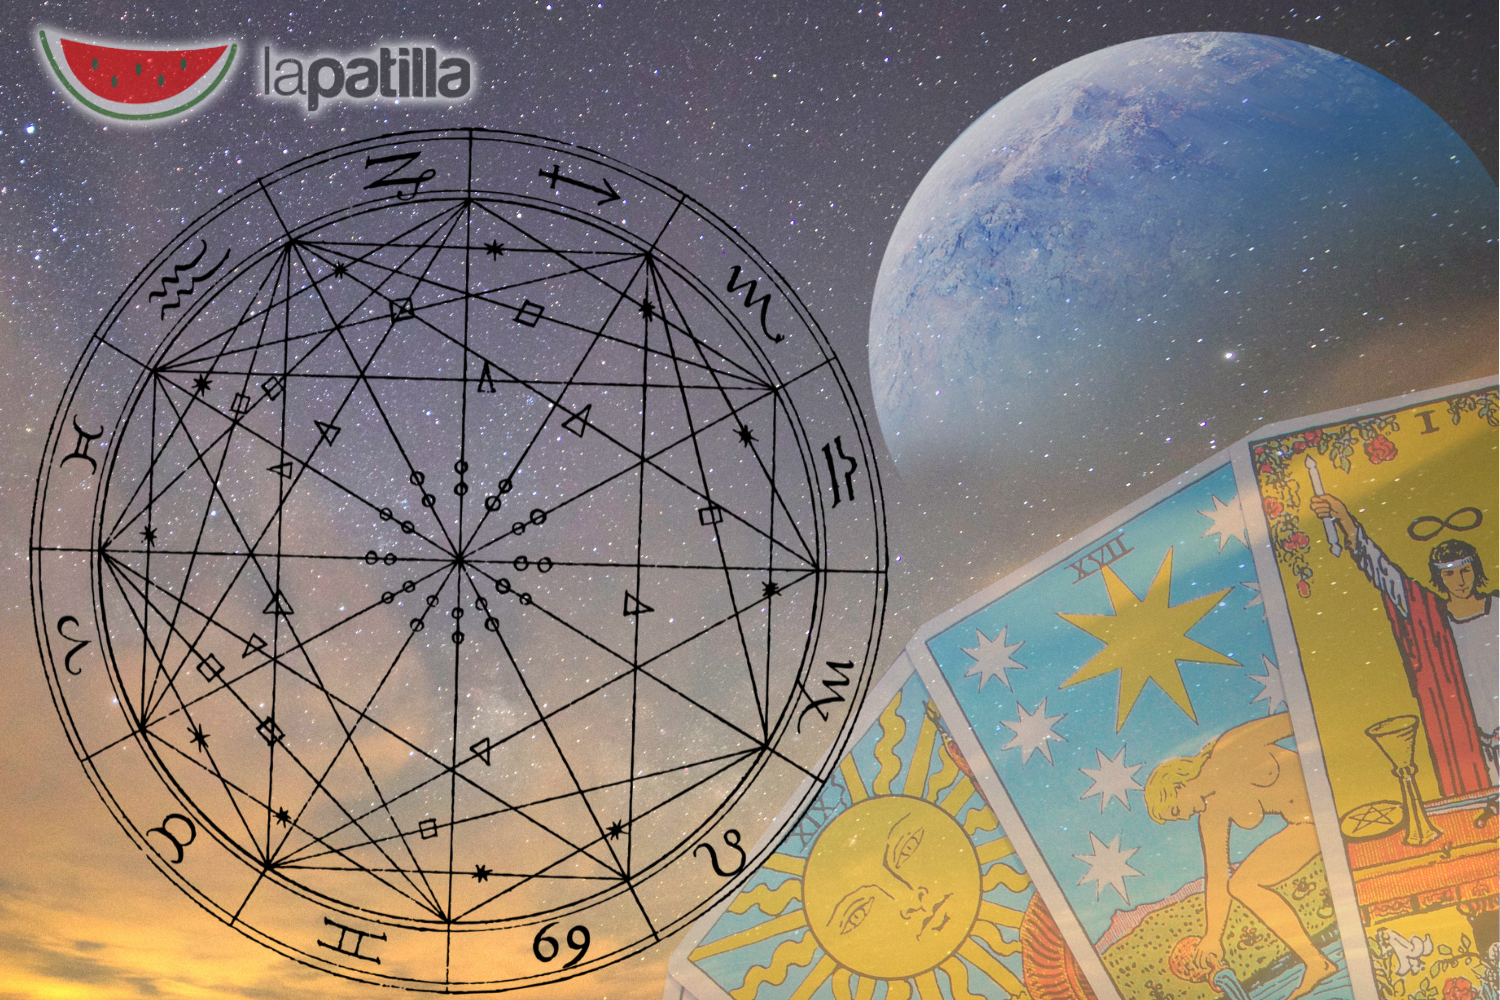 Tendencias astrológicas: Horóscopo del 9 al 15 de noviembre de 2019 (video)